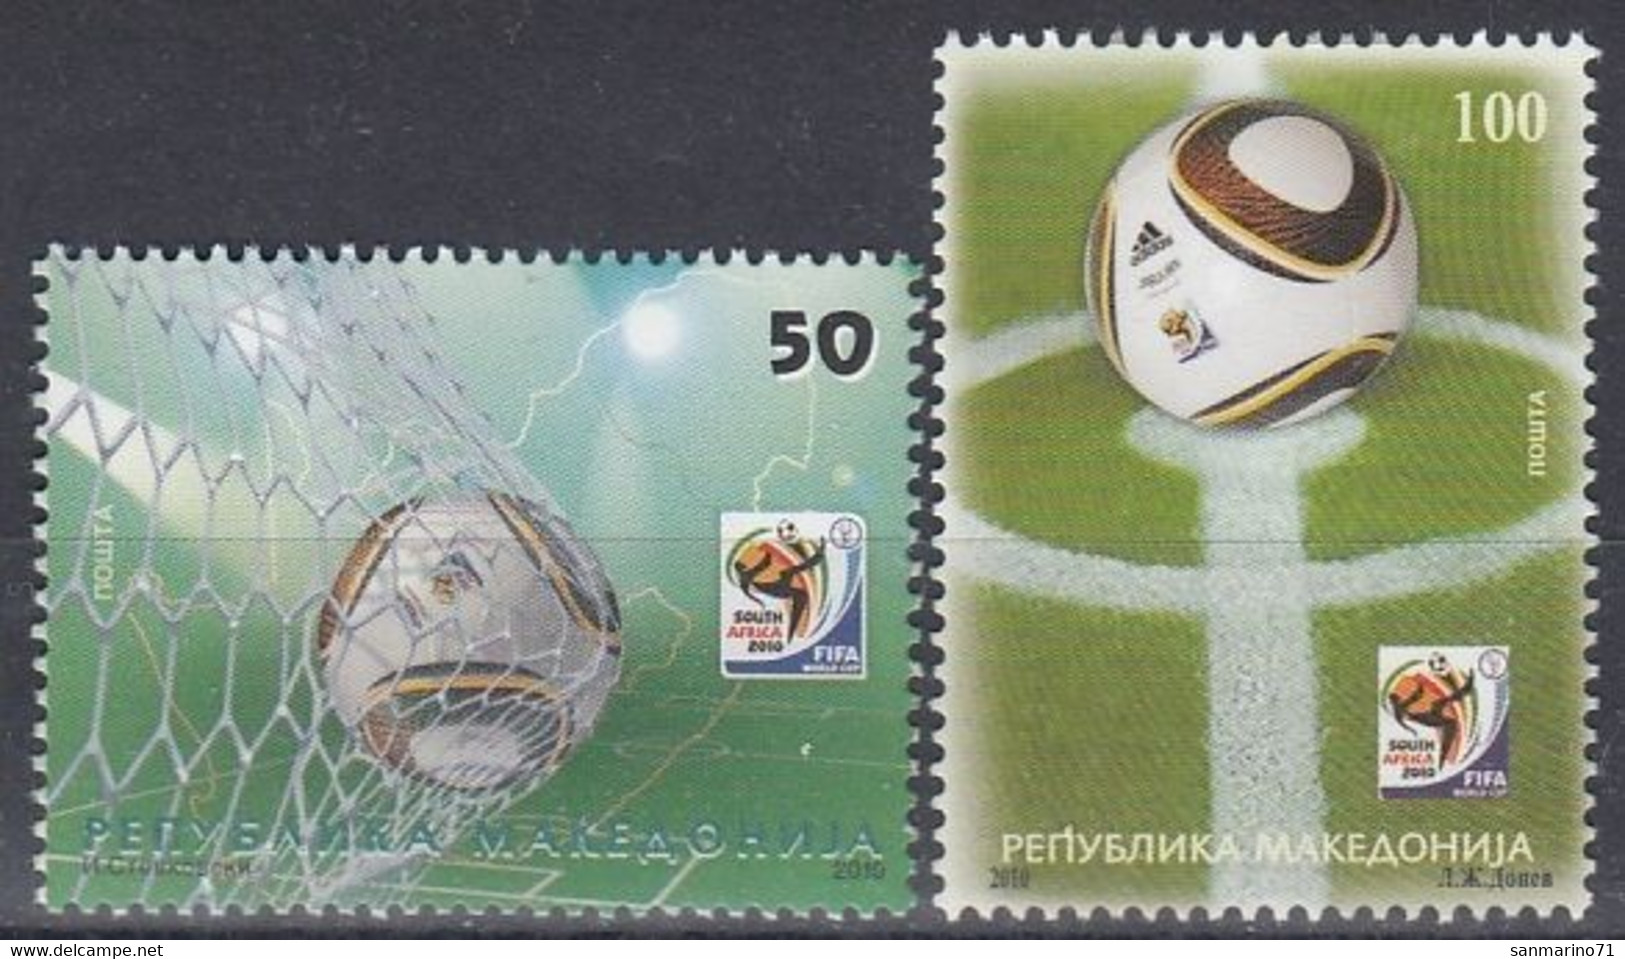 MACEDONIA 554-555,unused,football - 2010 – South Africa